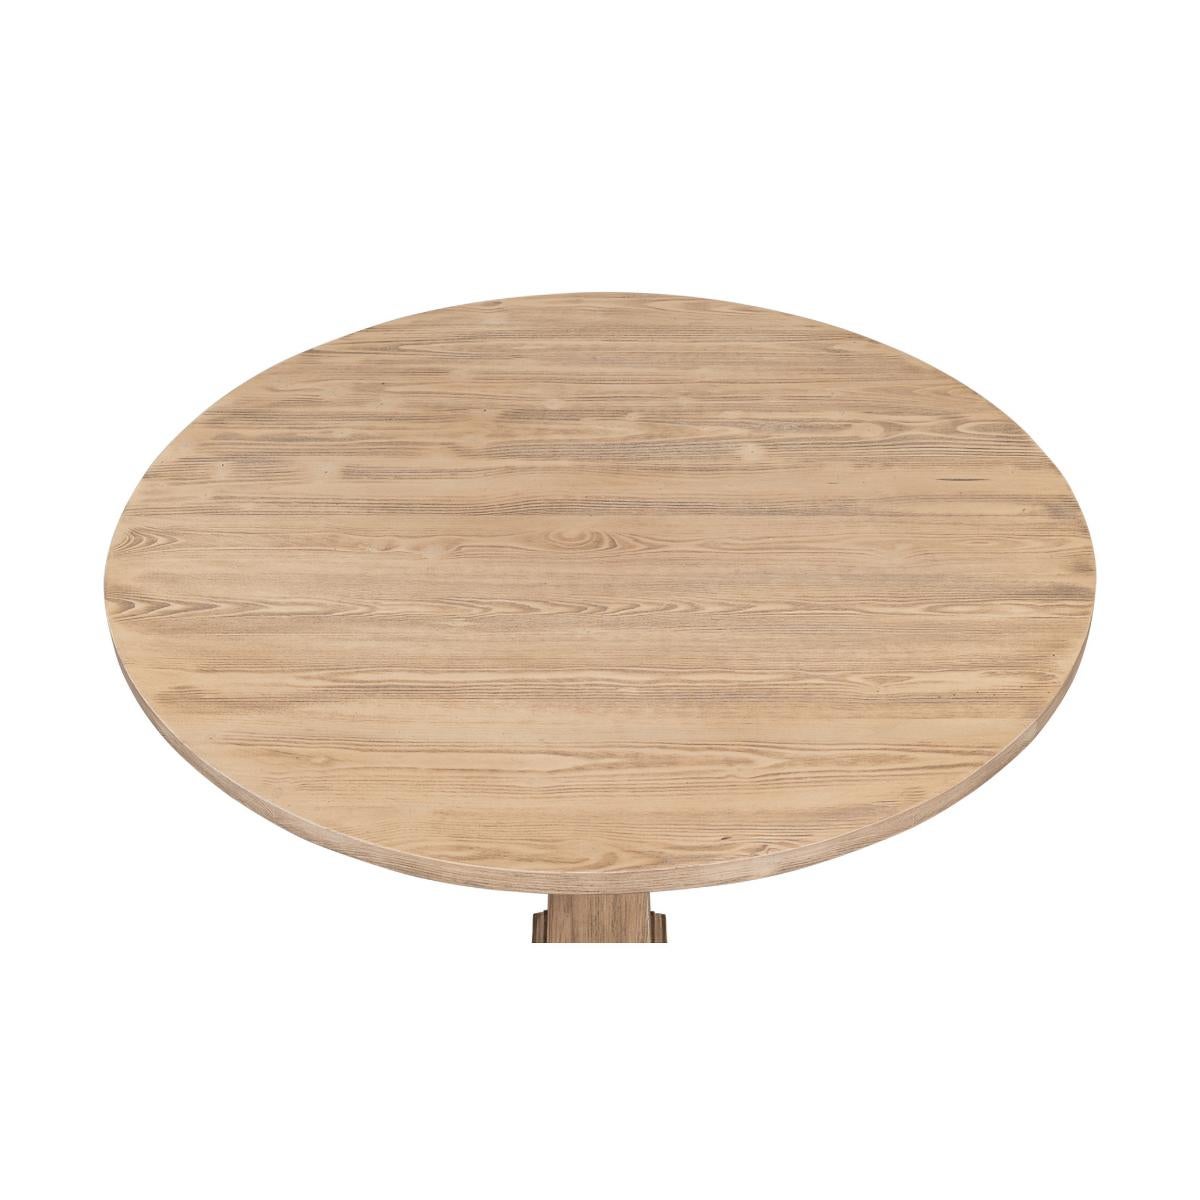 Table de bistrot moderne française avec un plateau rond en pin sur une base à piédestal en forme de colonne effilée.

Dimensions : 36